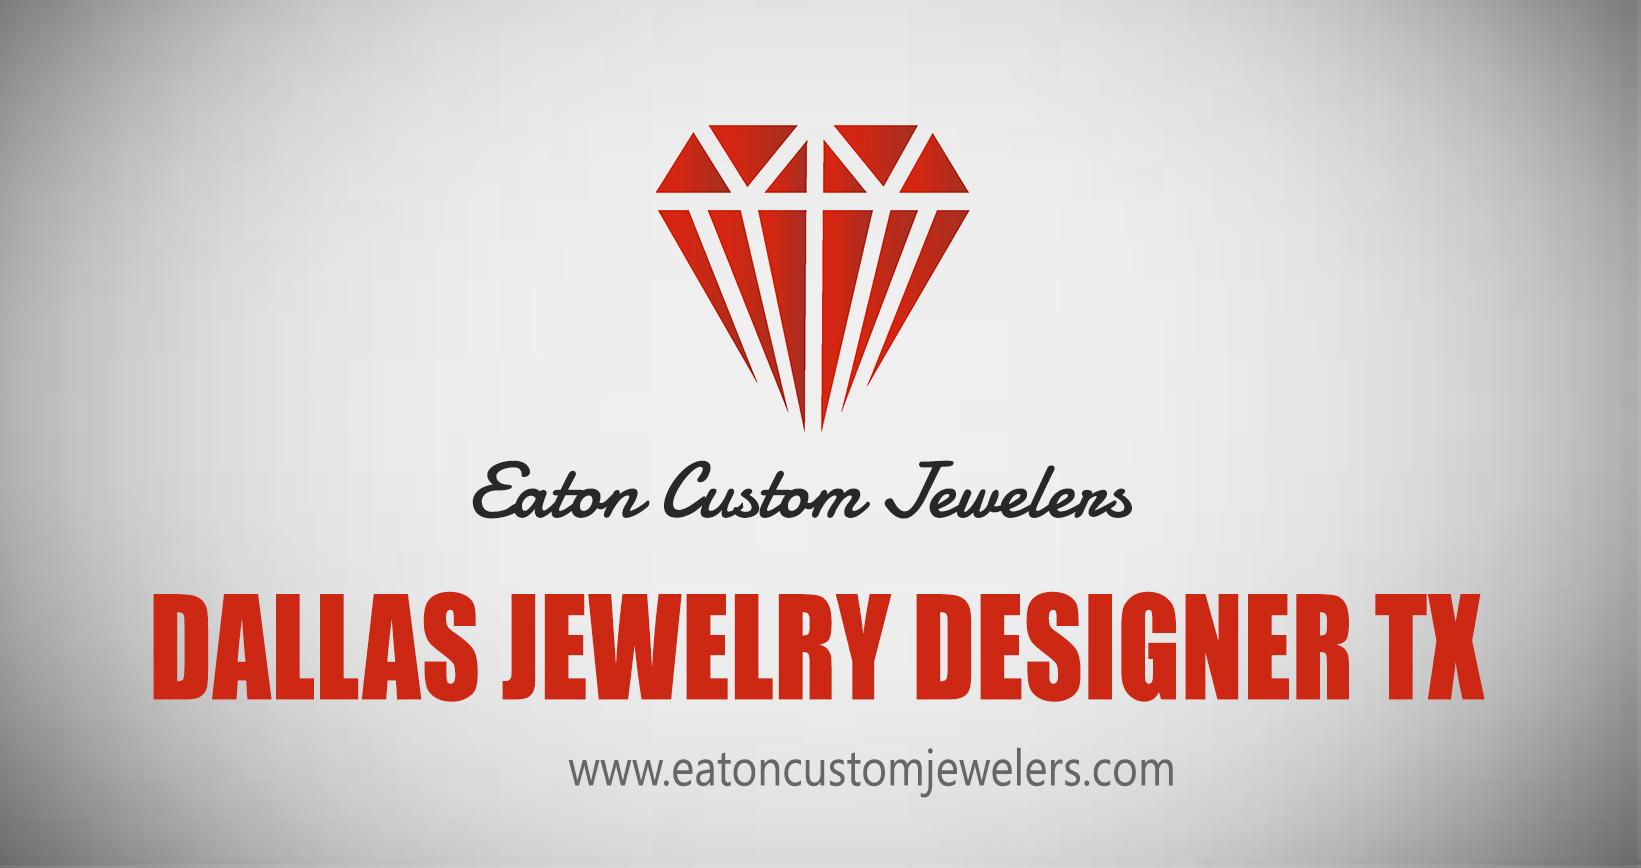 Dallas jewelry designer tx